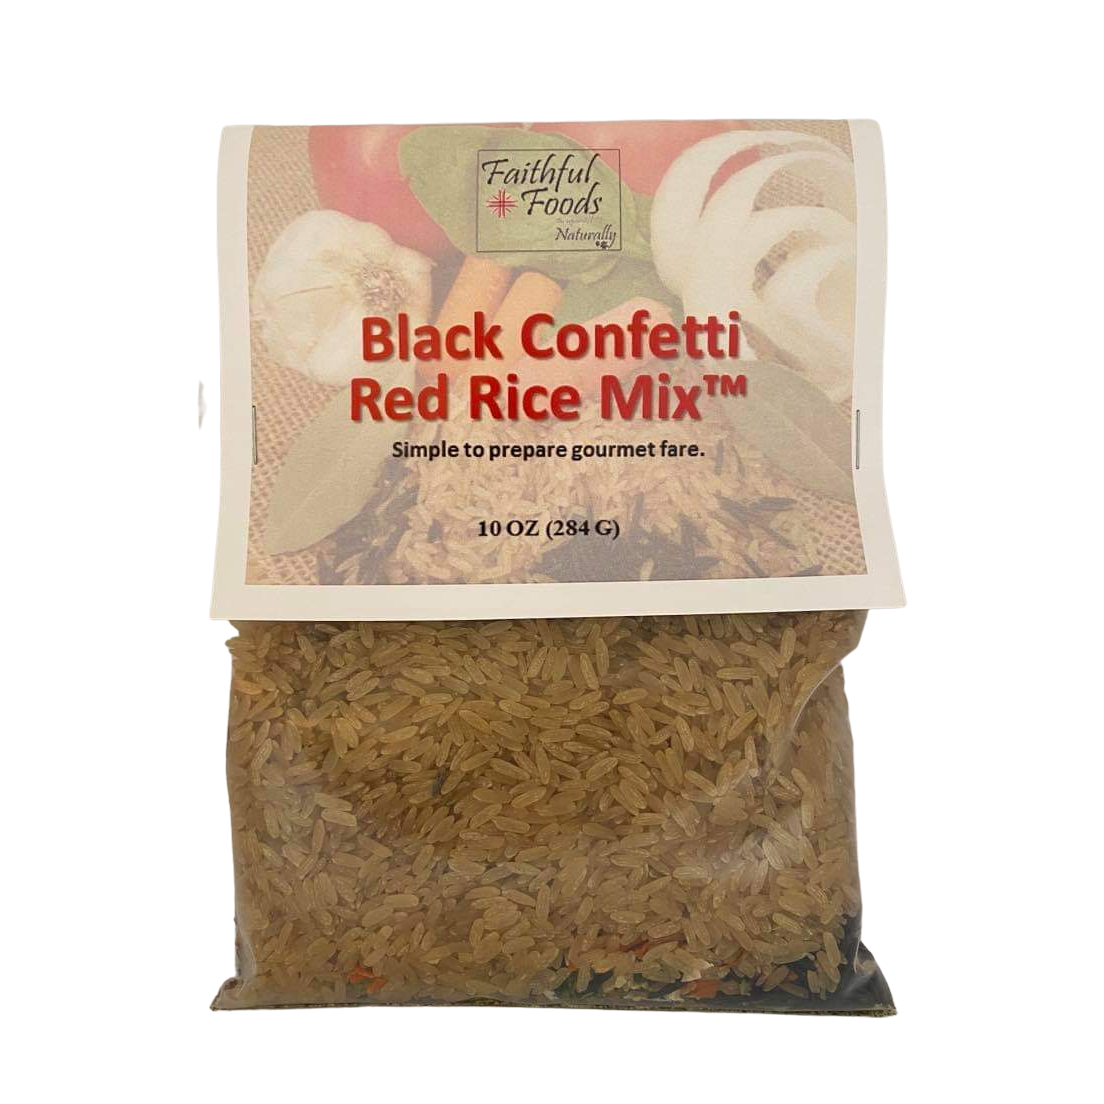 Black Confetti Red Rice Mix